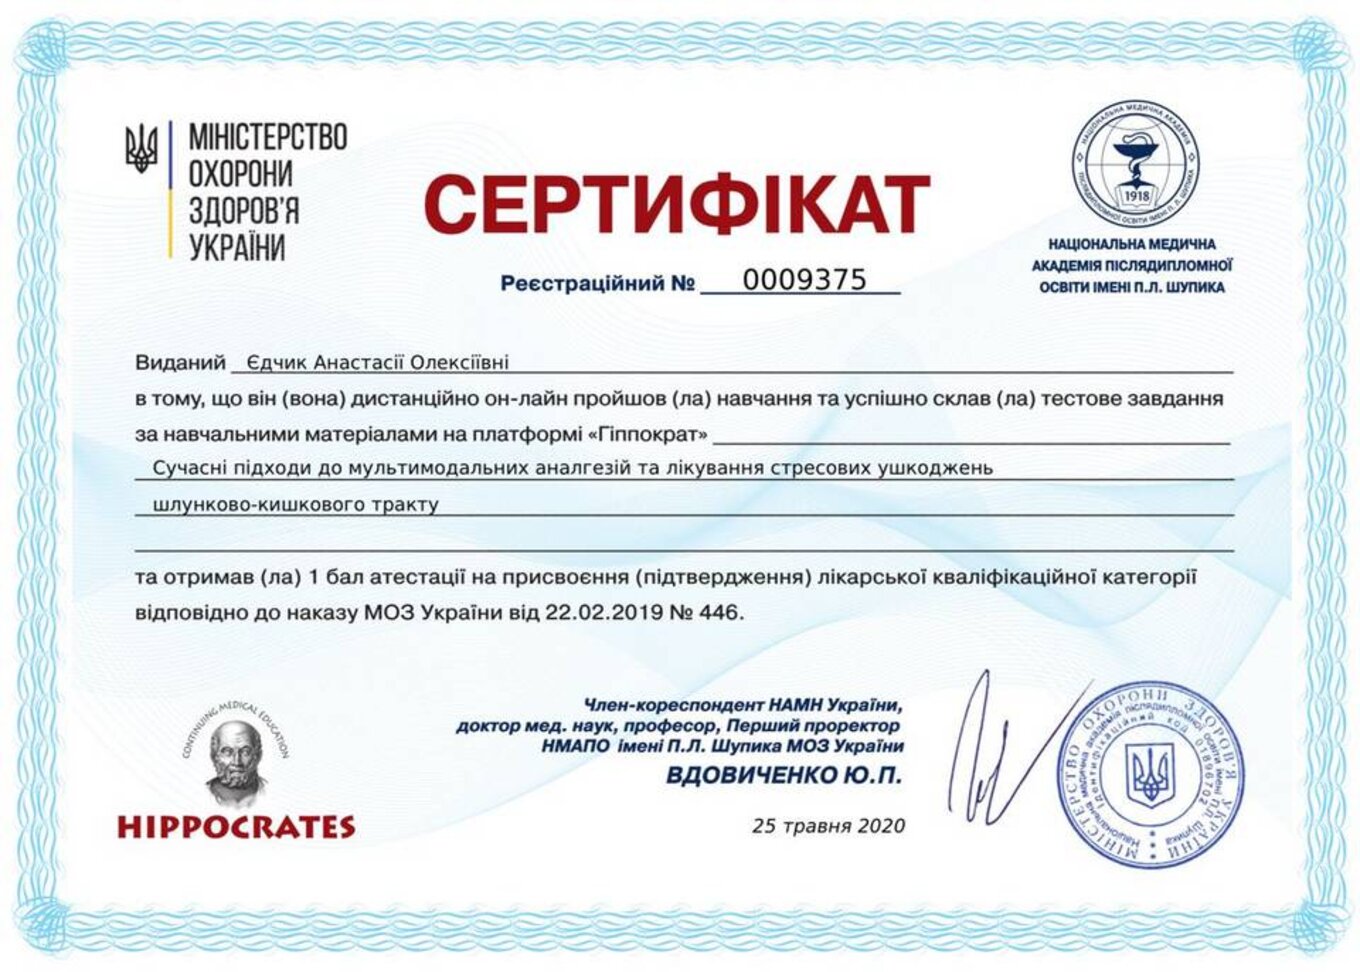 certificates/yedchik-anastasiya-oleksiyivna/erc-edchik-cert-27.jpg